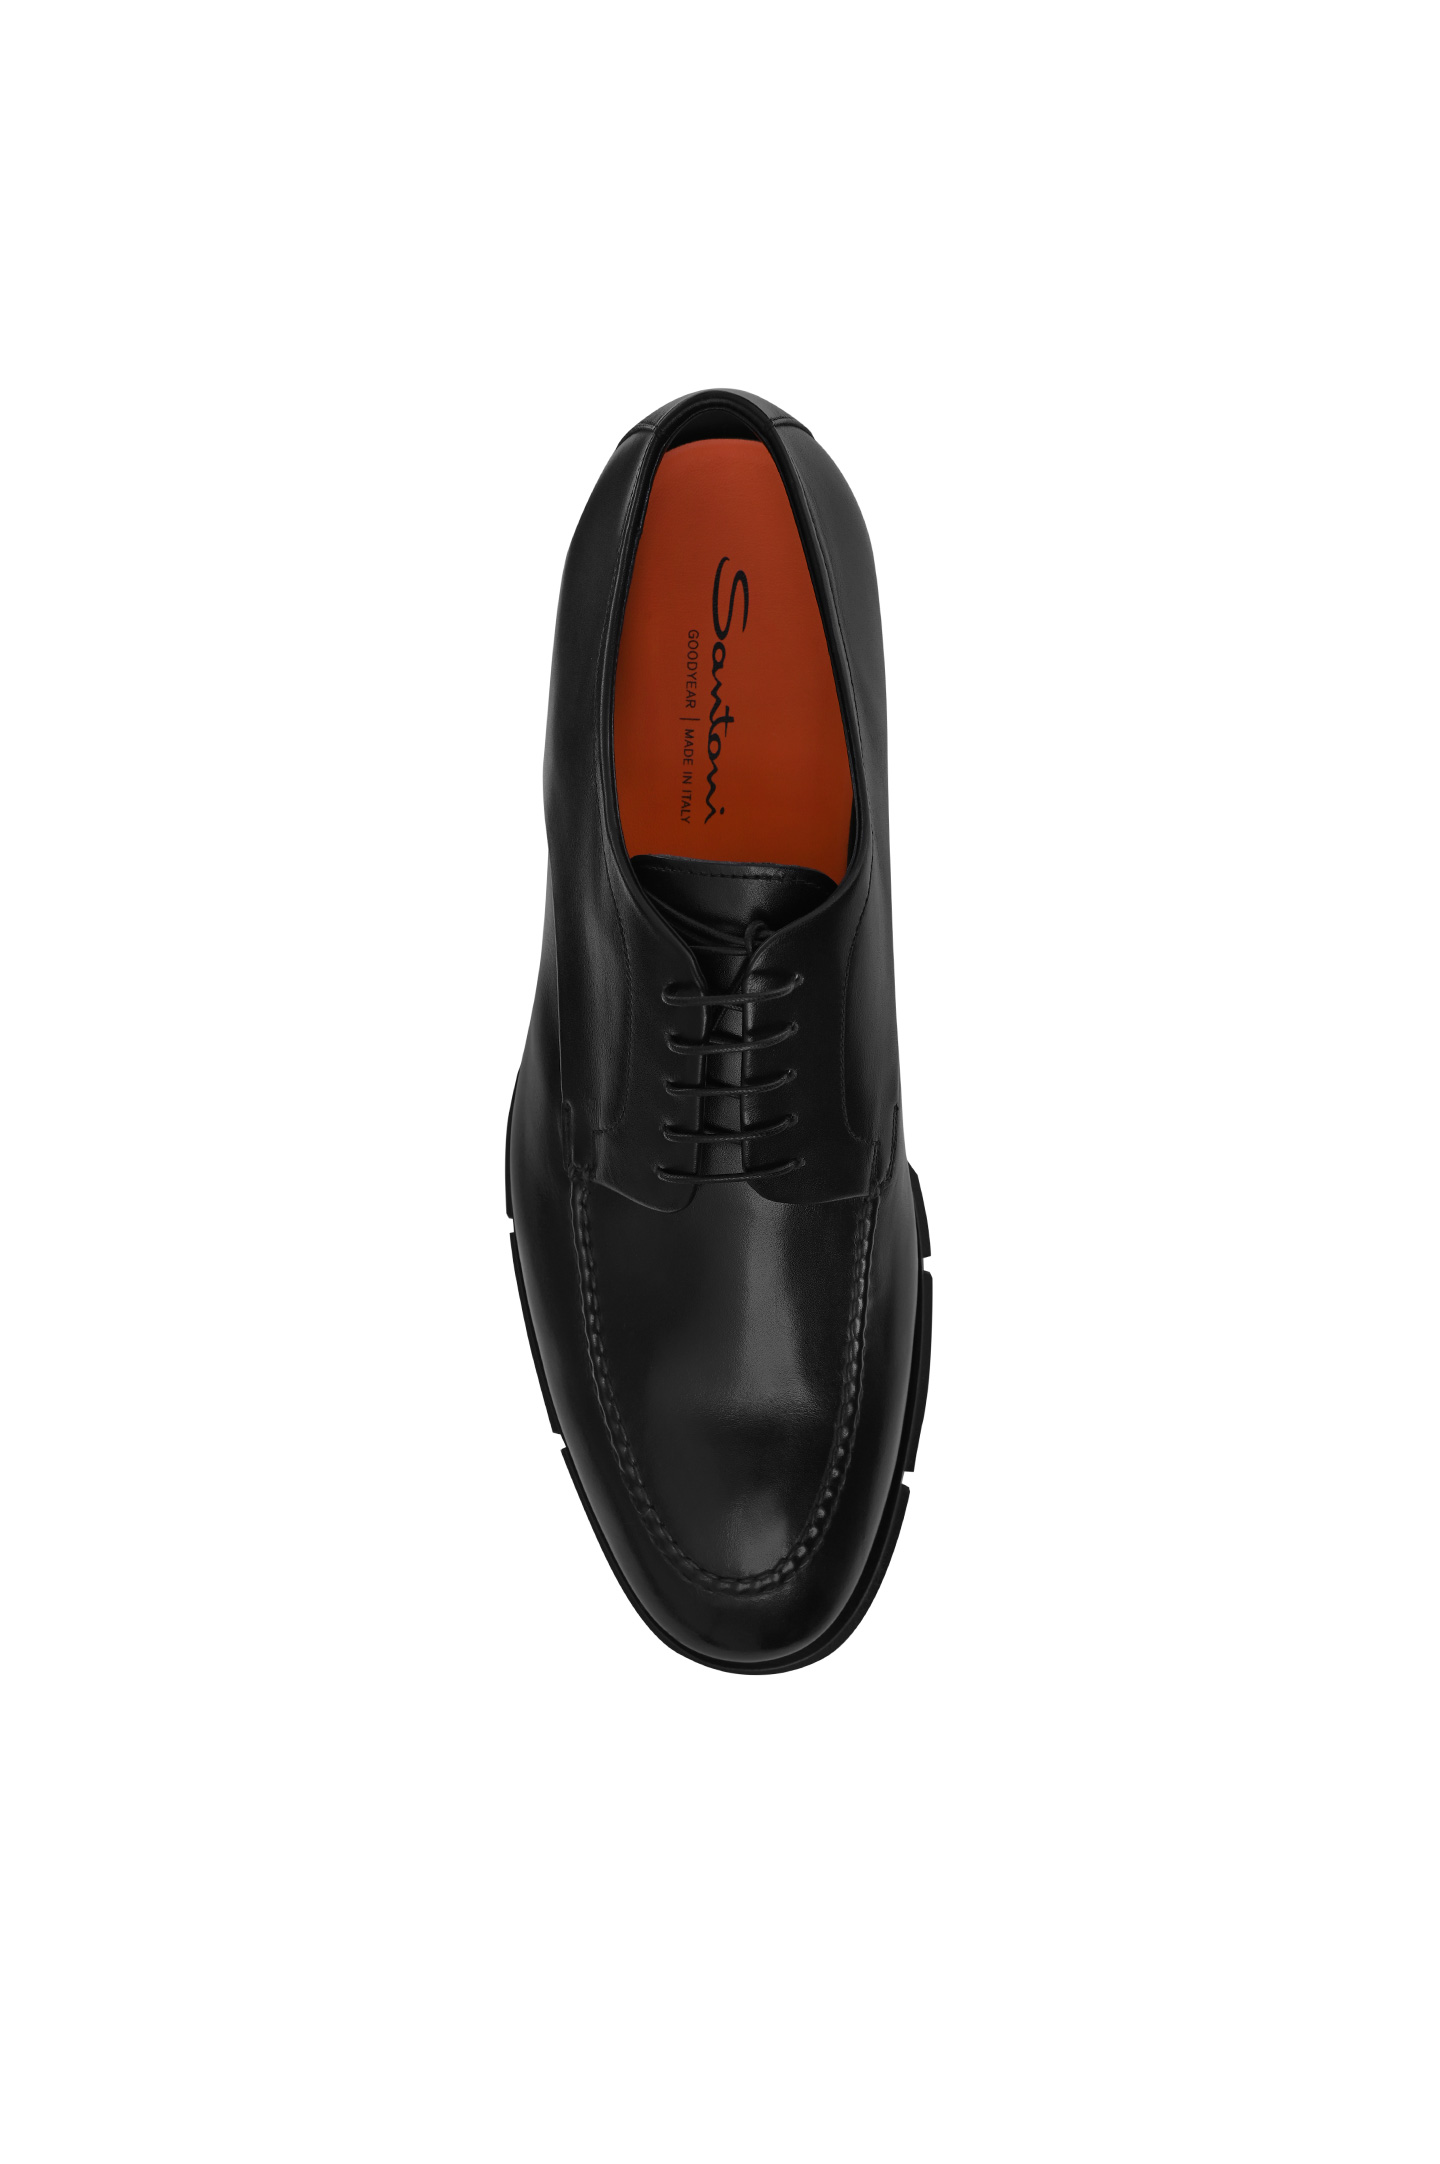 Туфли SANTONI MCJG18567PI2HDLNN01, цвет: Черный, Мужской